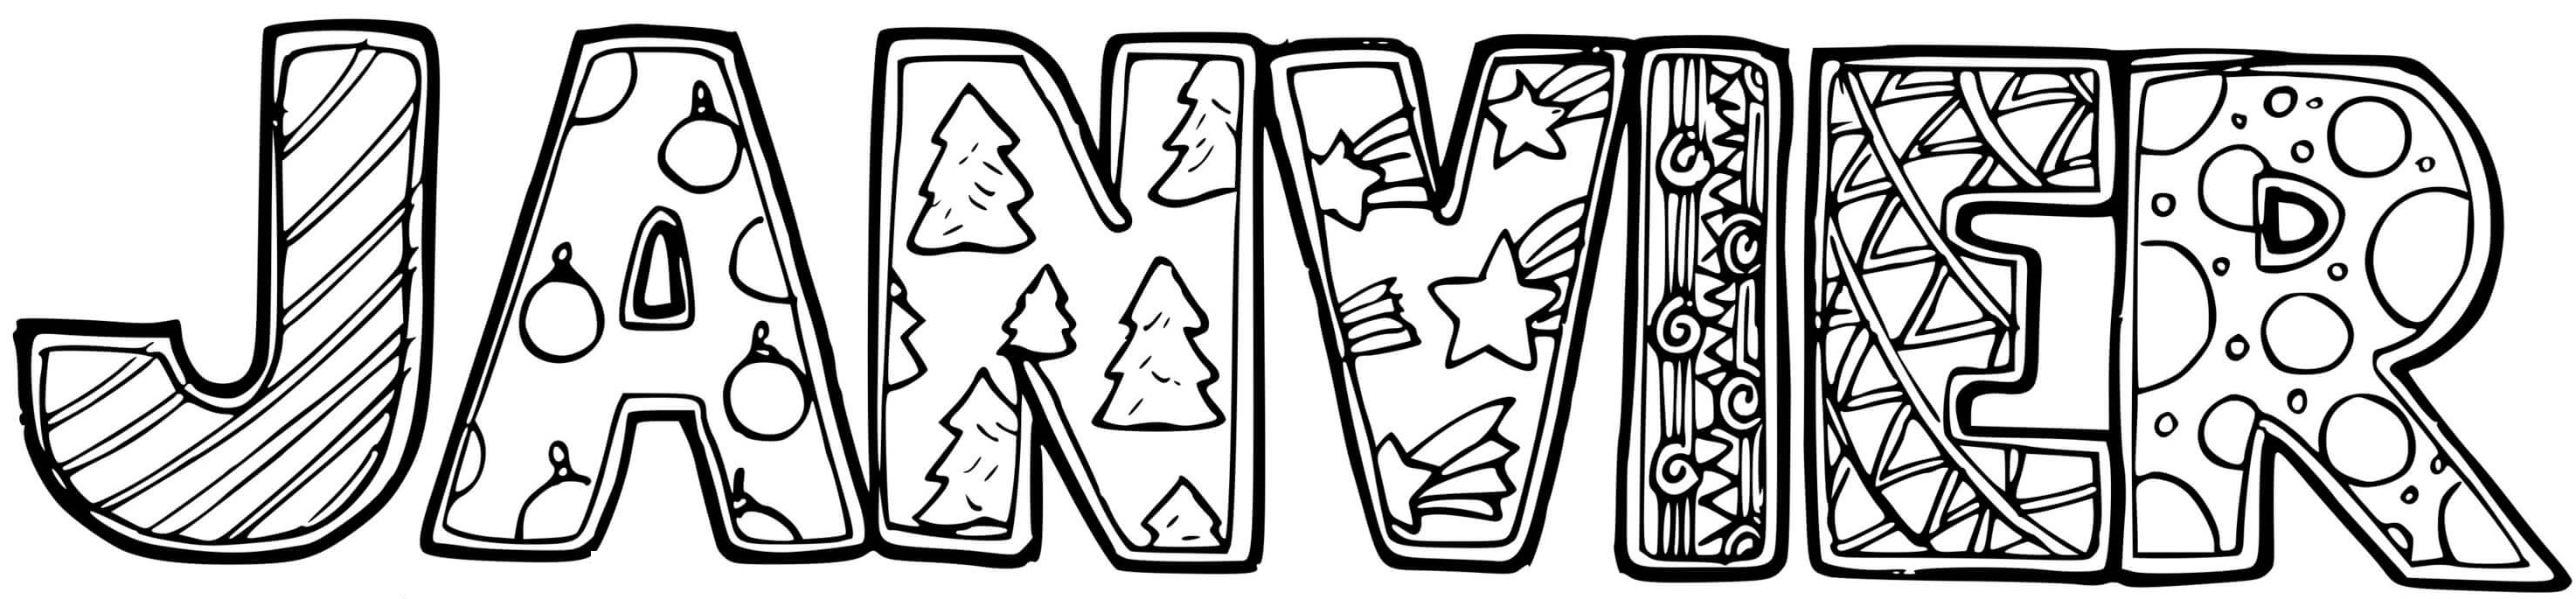   Les lettres N et W décorées d'étoiles et d'arbres 